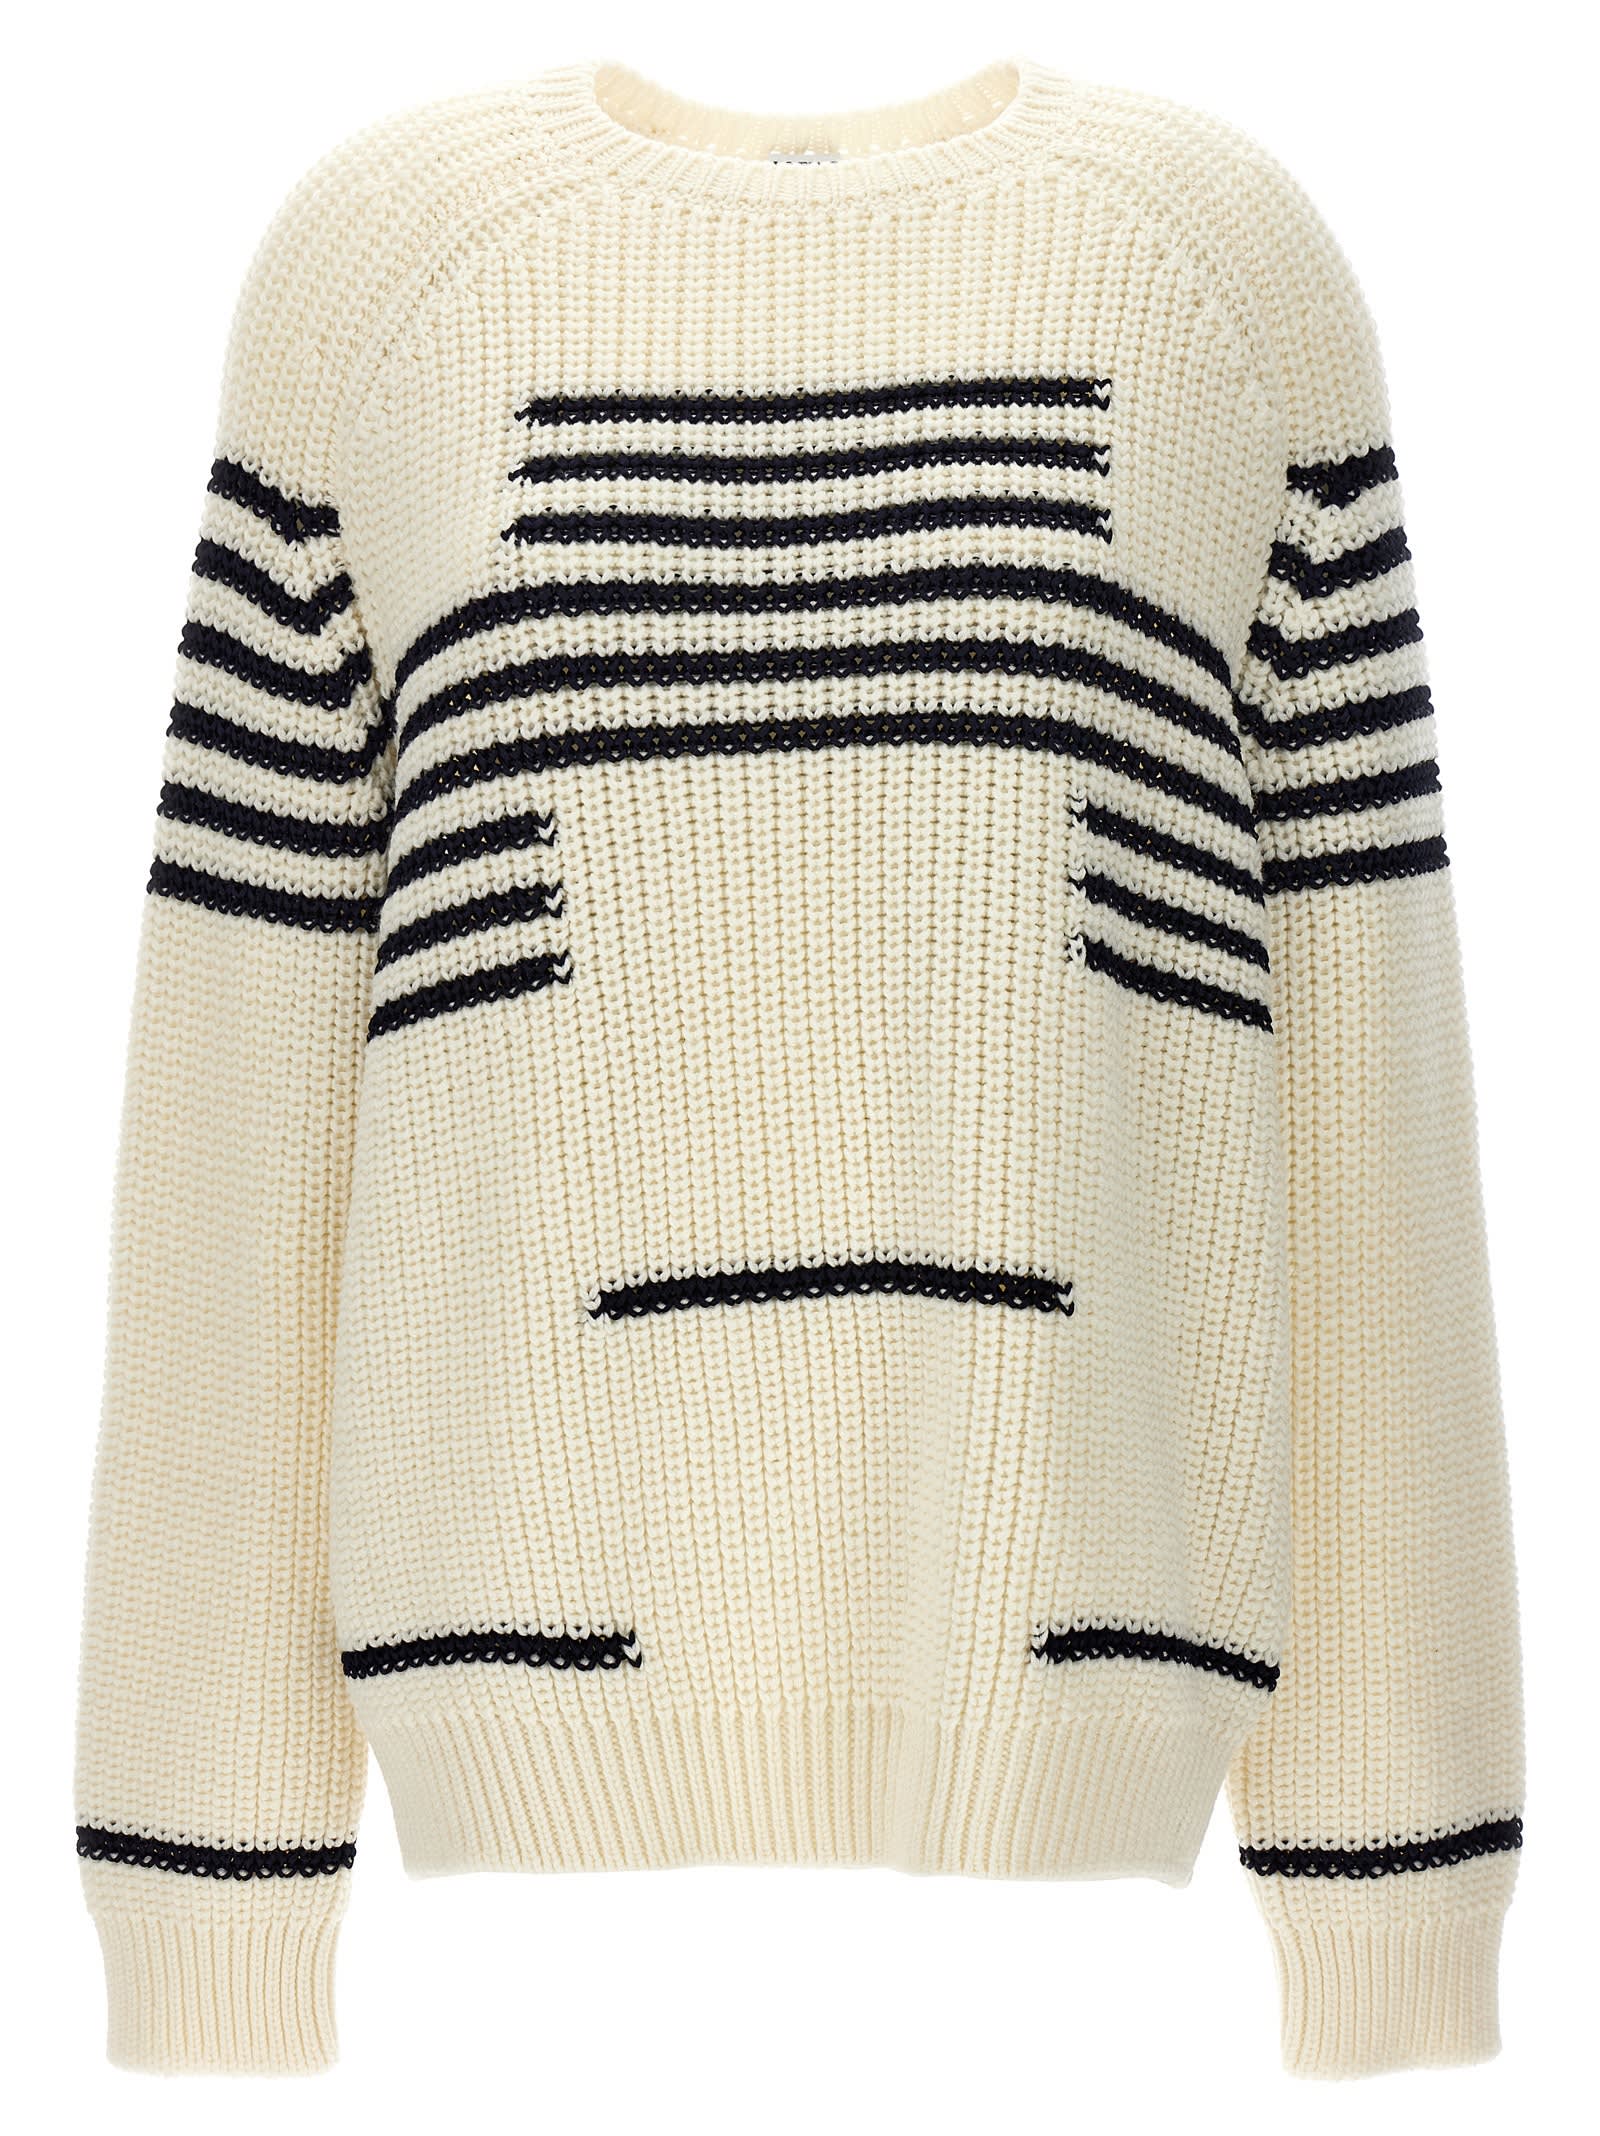 Loewe Striped Sweater